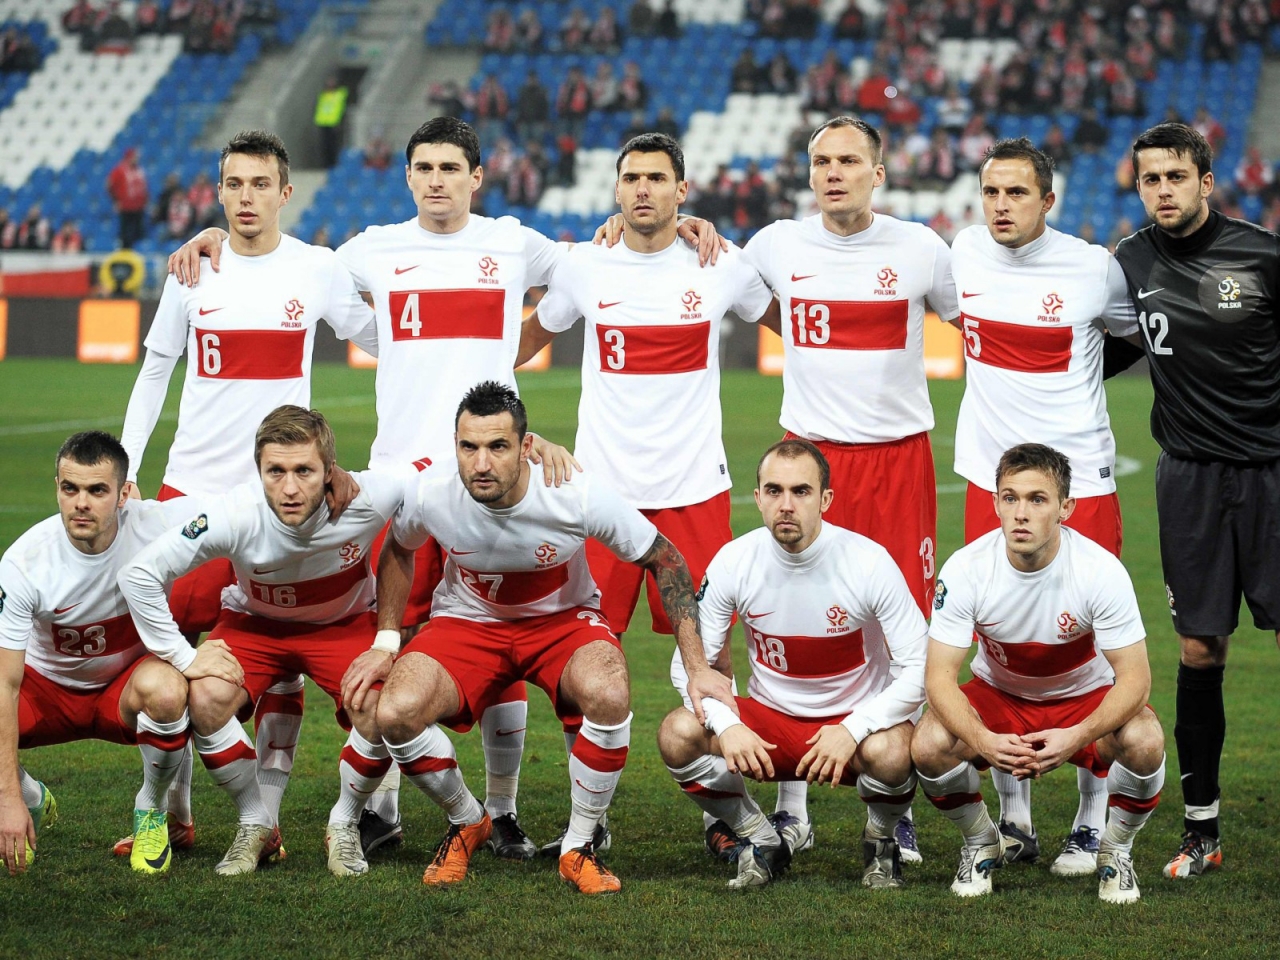 Polska National Team for 1280 x 960 resolution